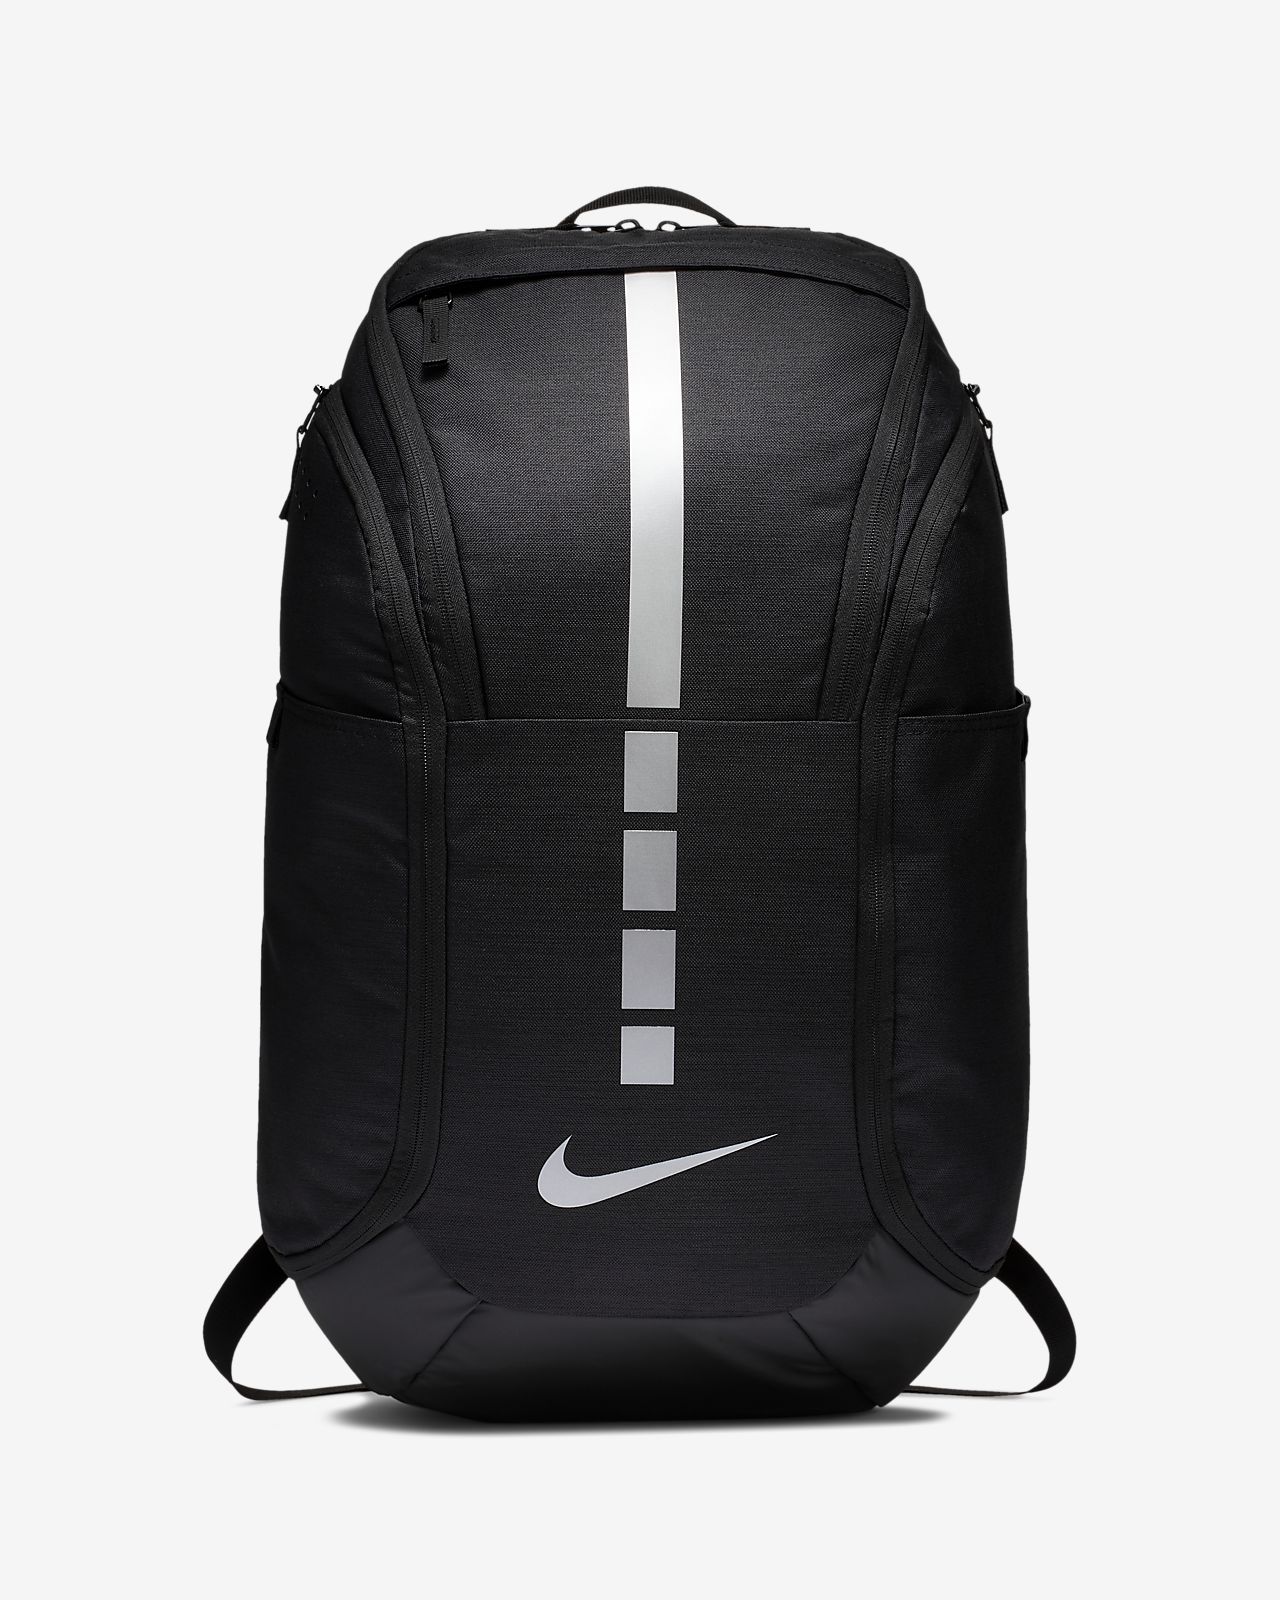 nike backpacks elite Cheaper Than 